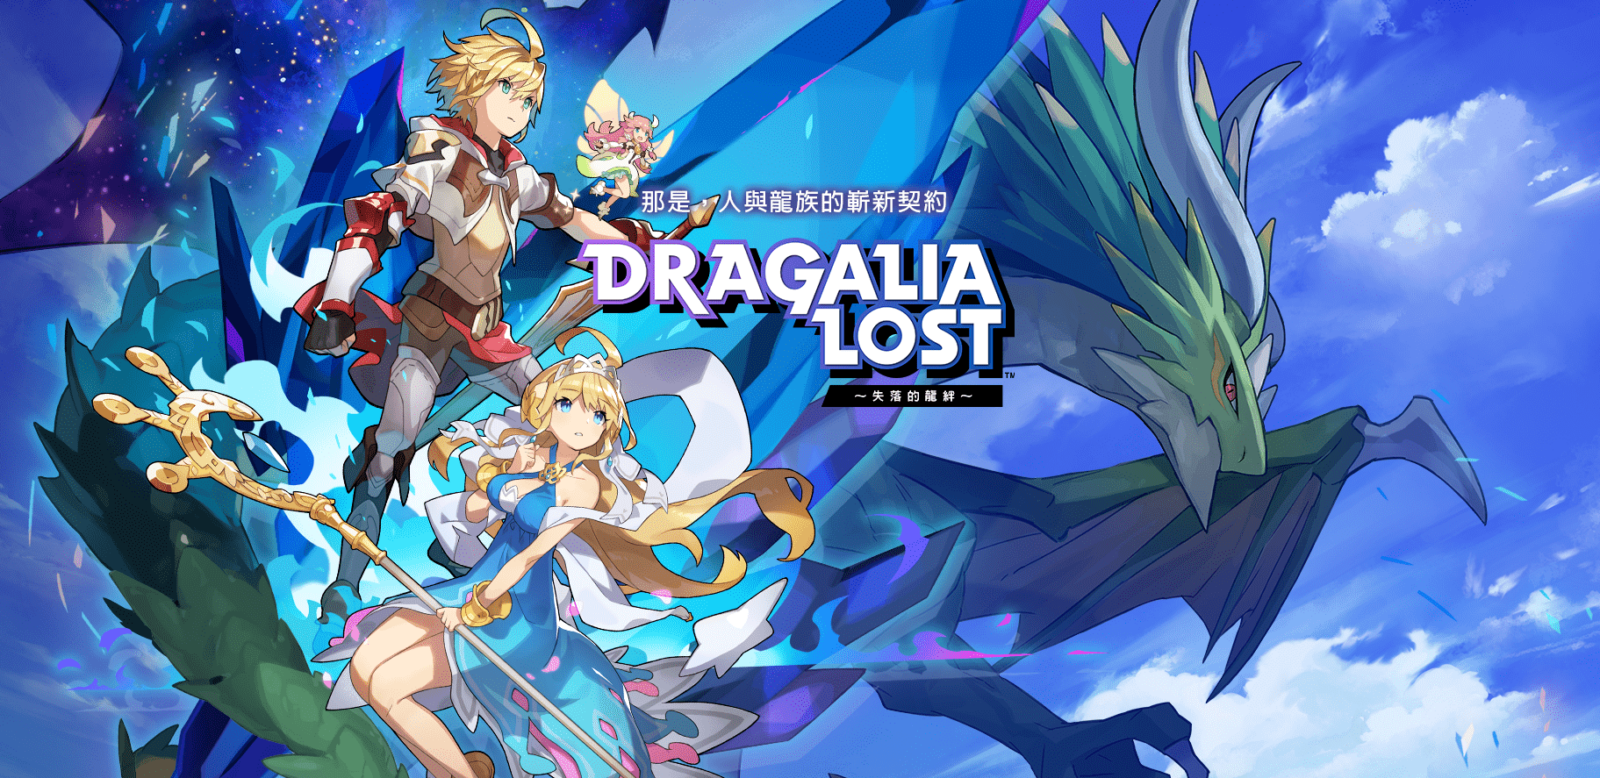 Pré-enregistrez-vous pour le RPG mobile de Nintendo Dragalia Lost Applications